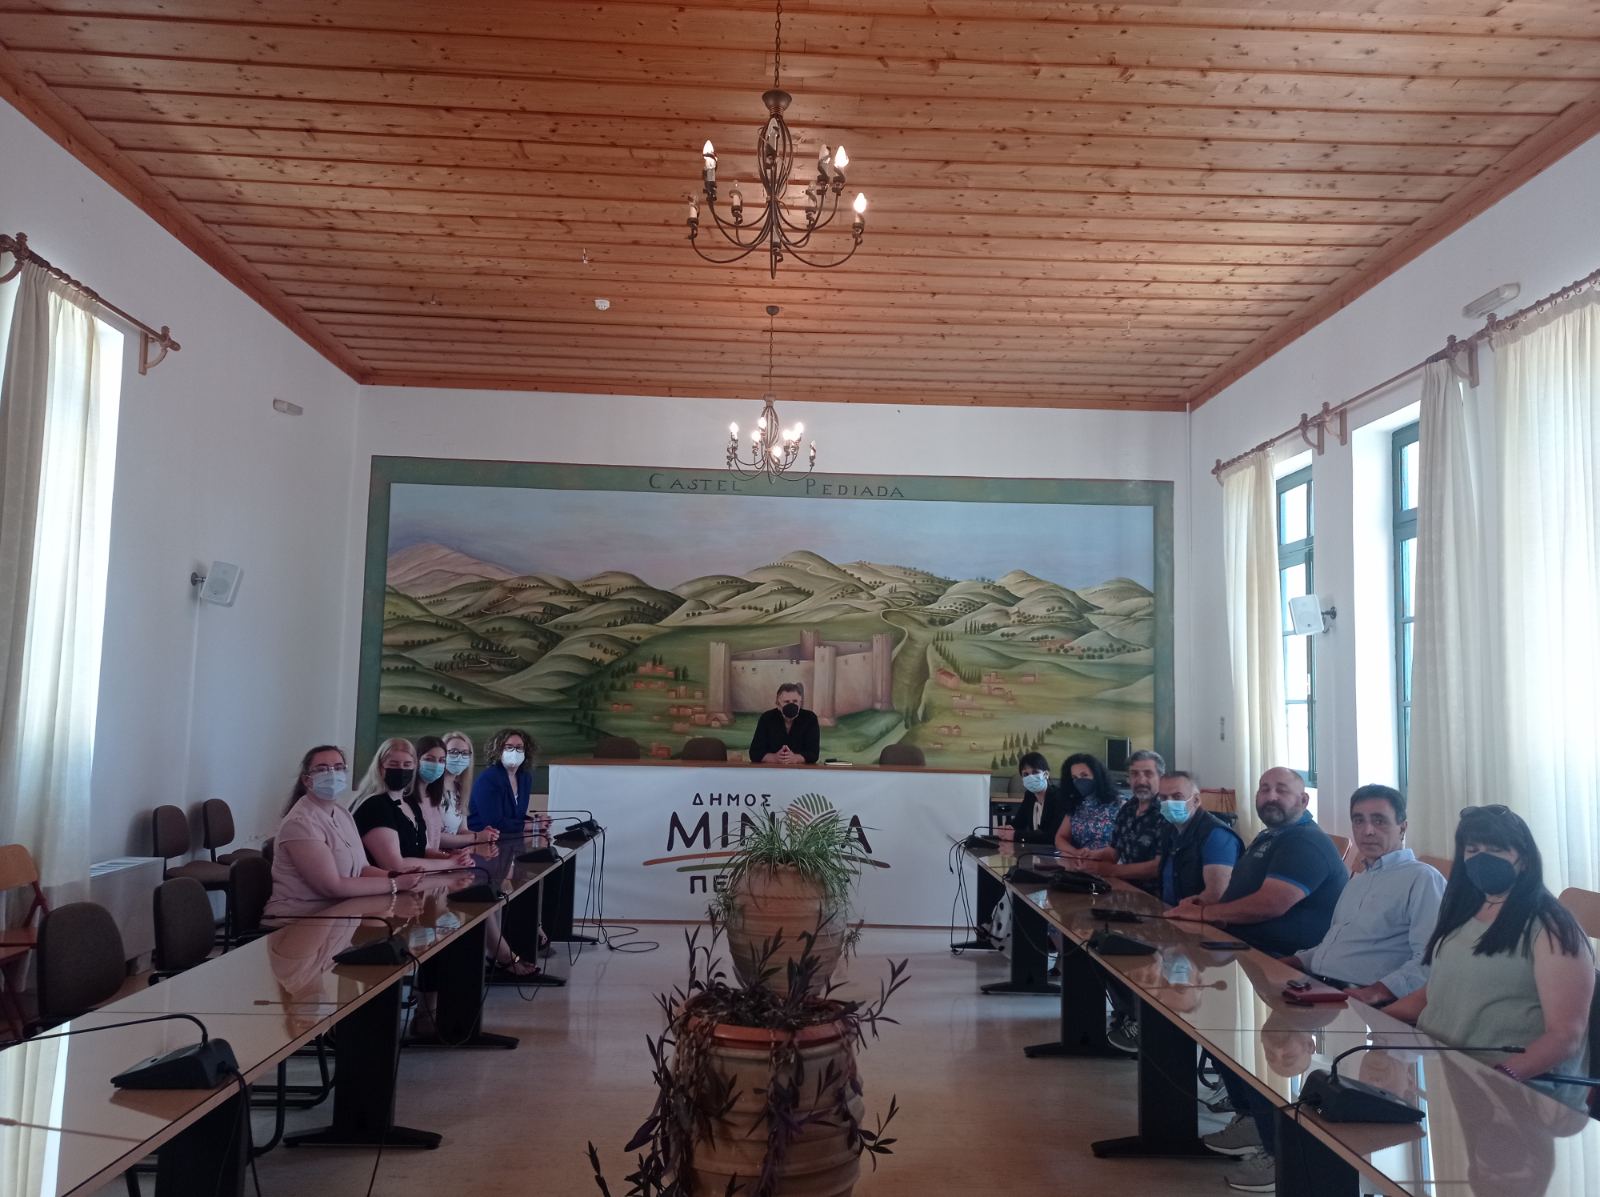 Συνάντηση δικαστικών υπαλλήλων από τη Λιθουανία με τον Δήμαρχο Μινώα Πεδιάδας στο Καστέλλι